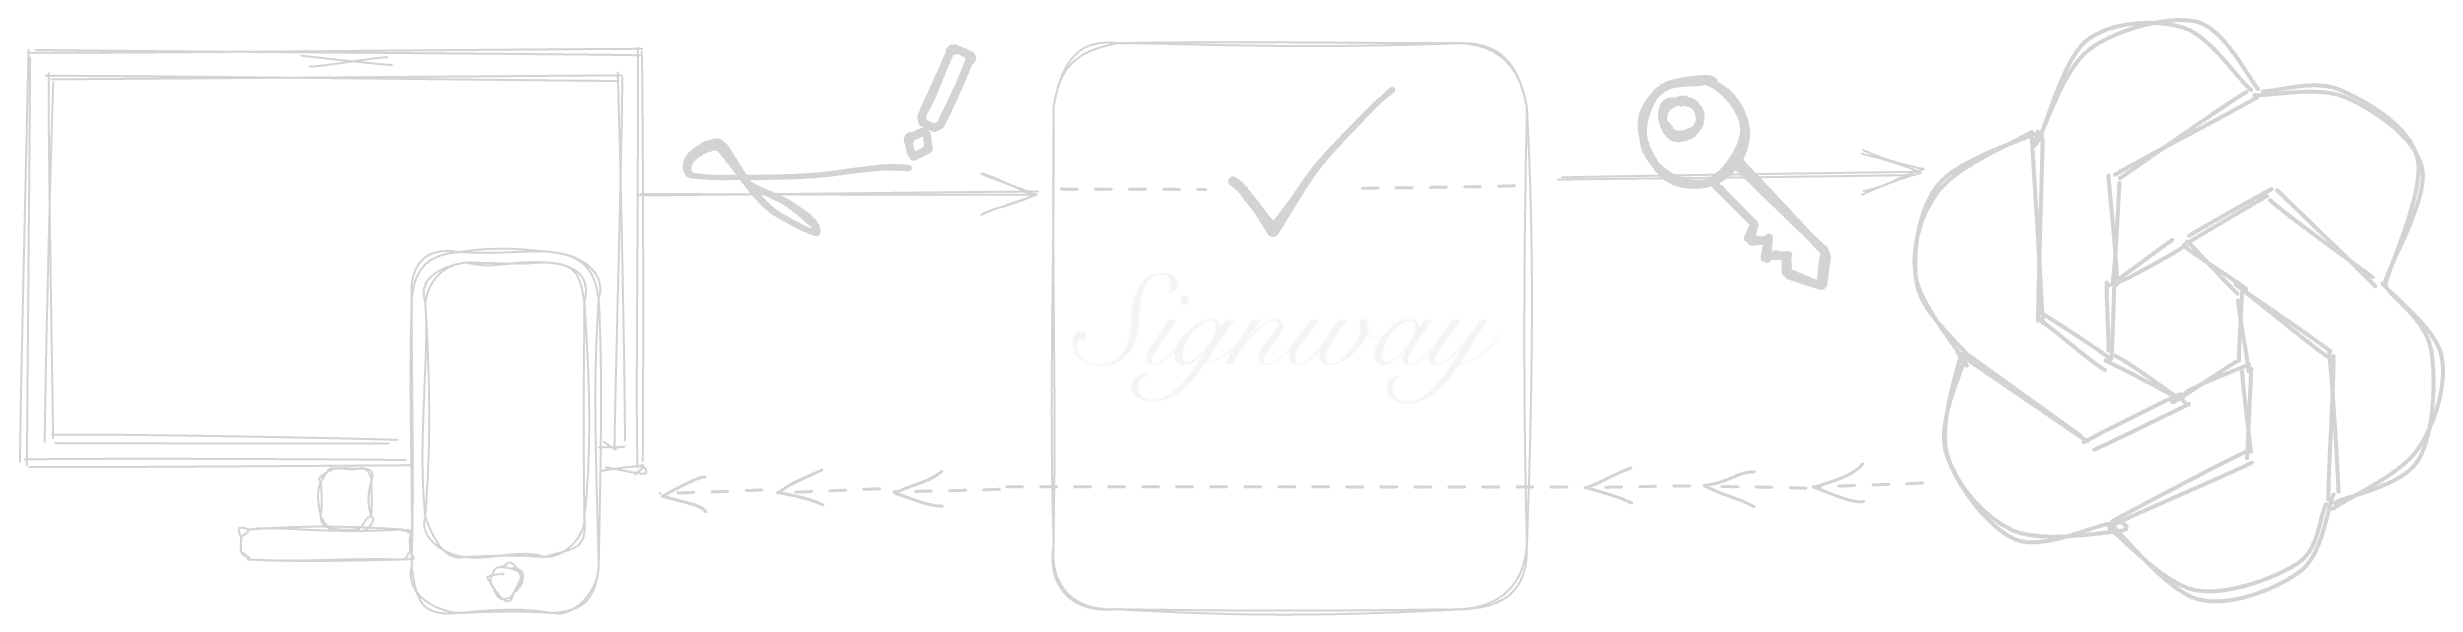 Signway scheme